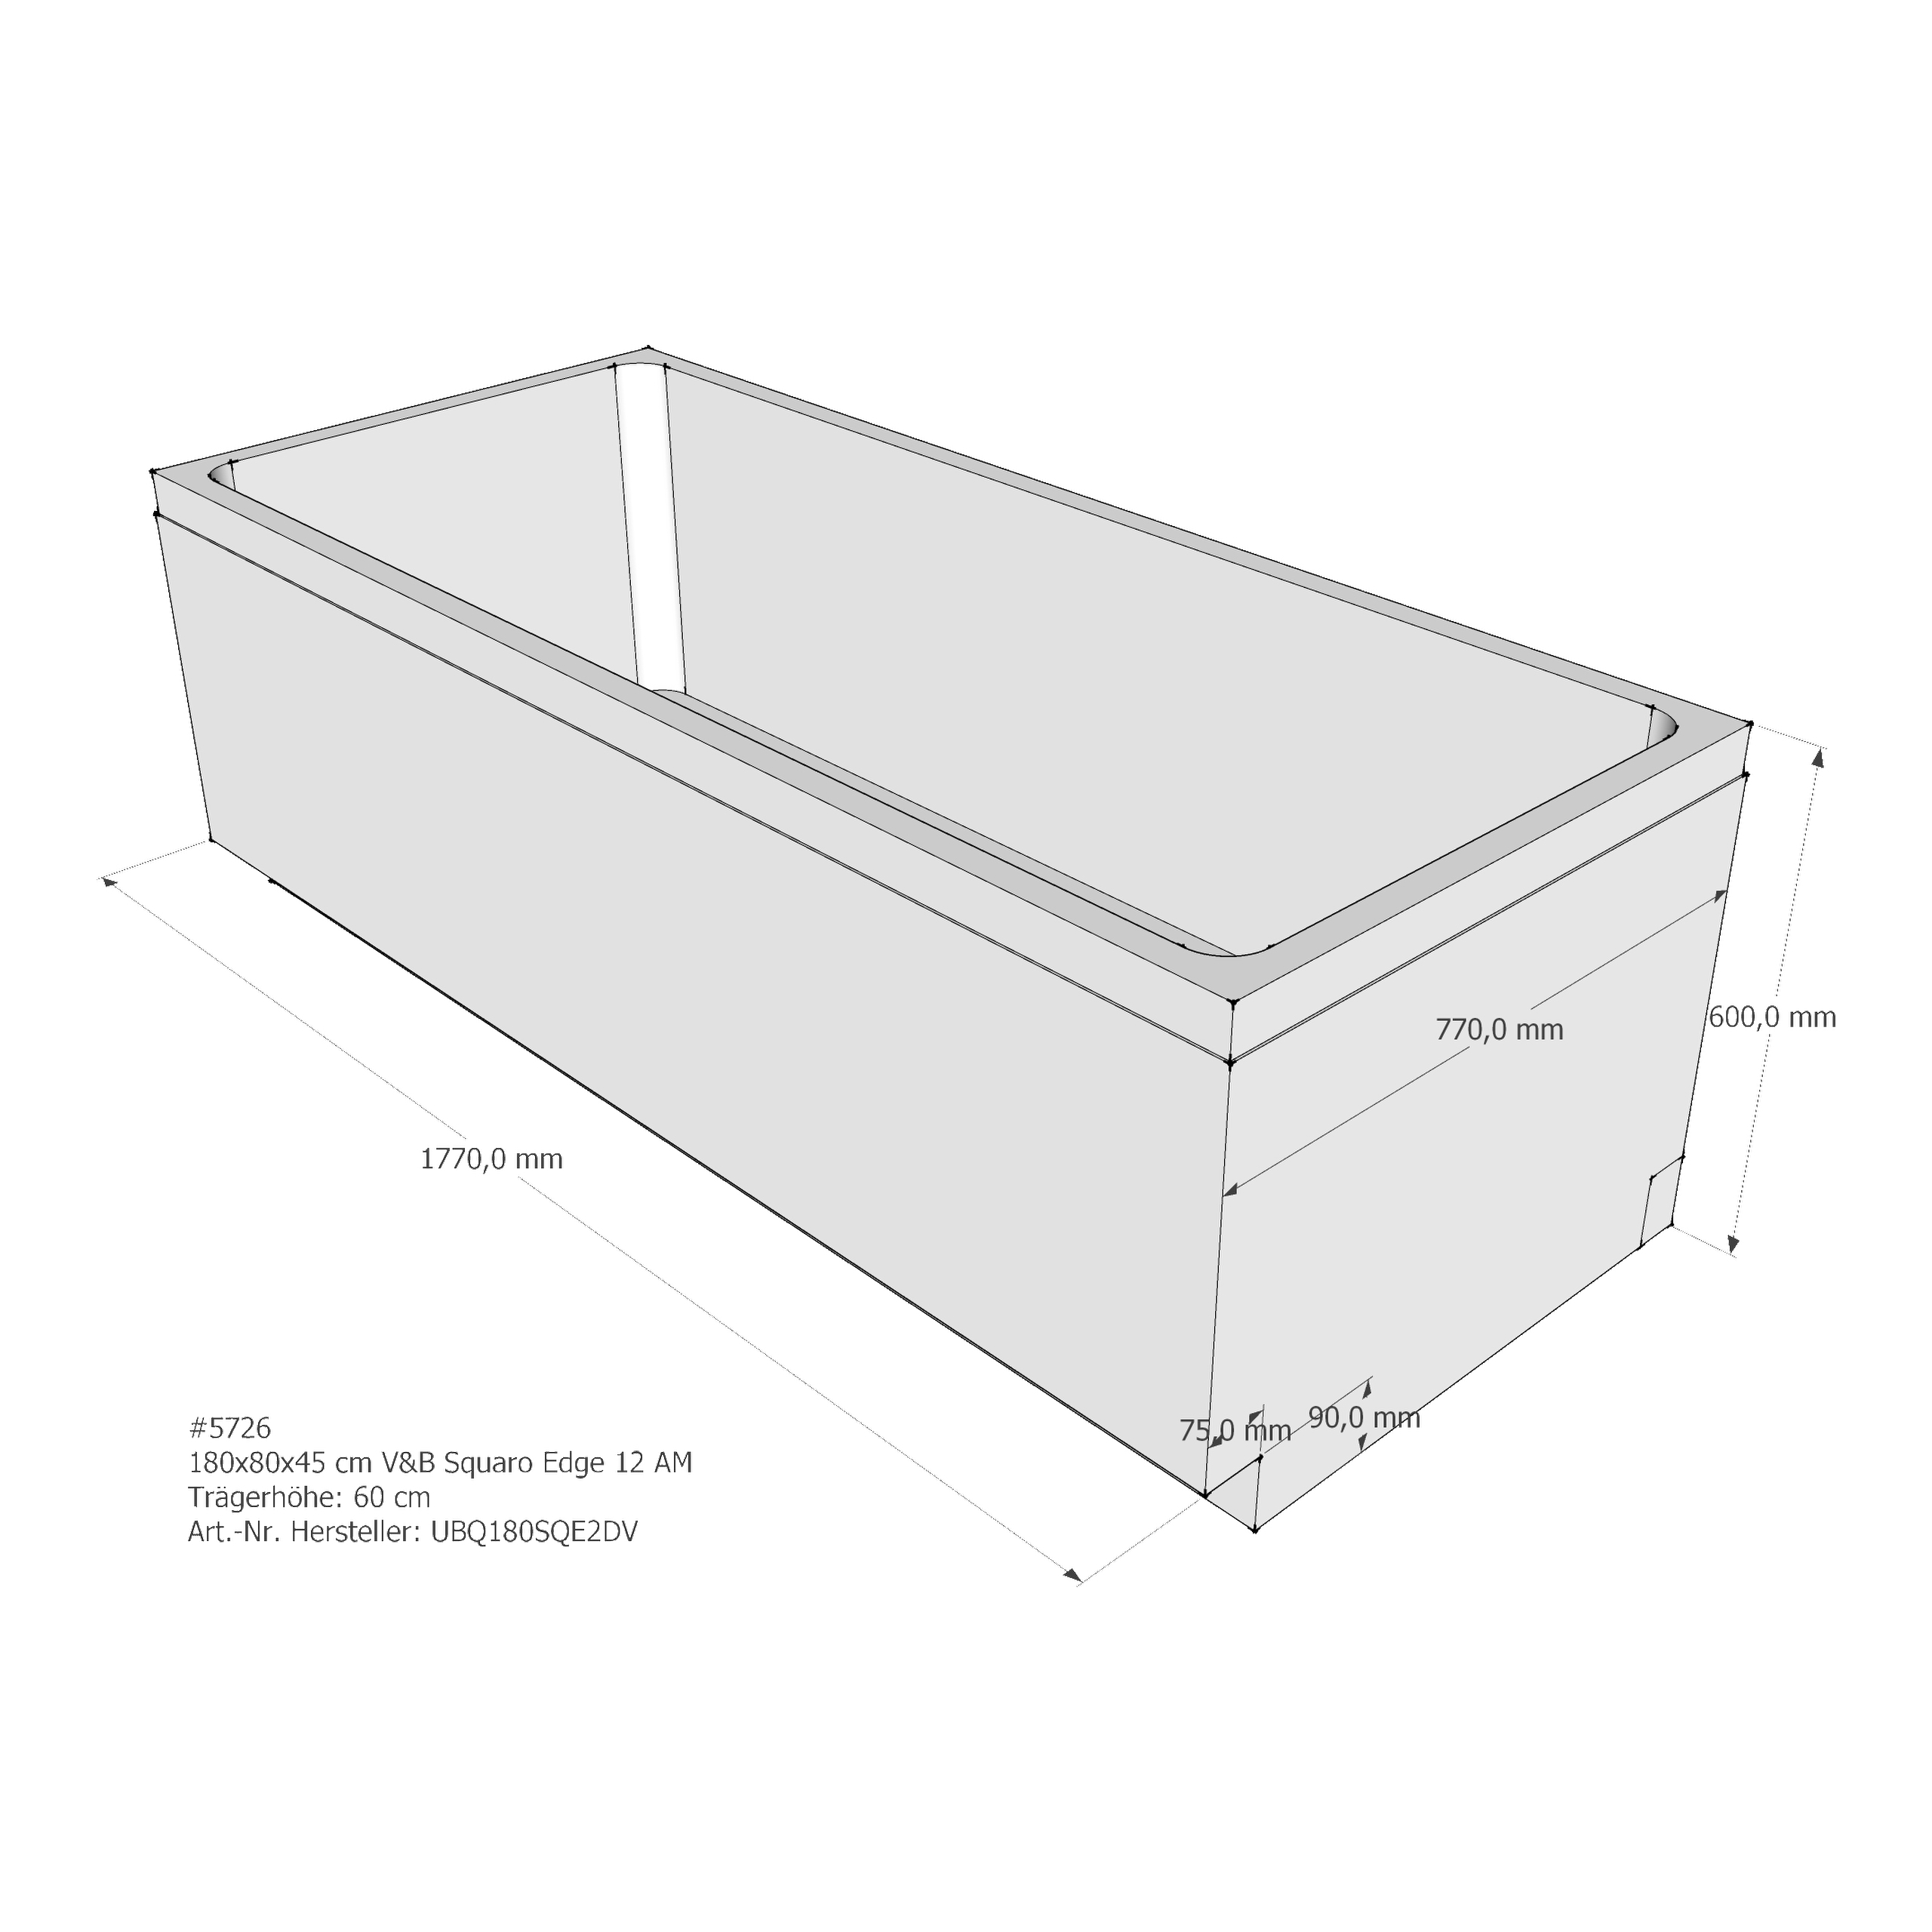 Badewannenträger für Villeroy & Boch Squaro Edge 12 180 × 80 × 45 cm